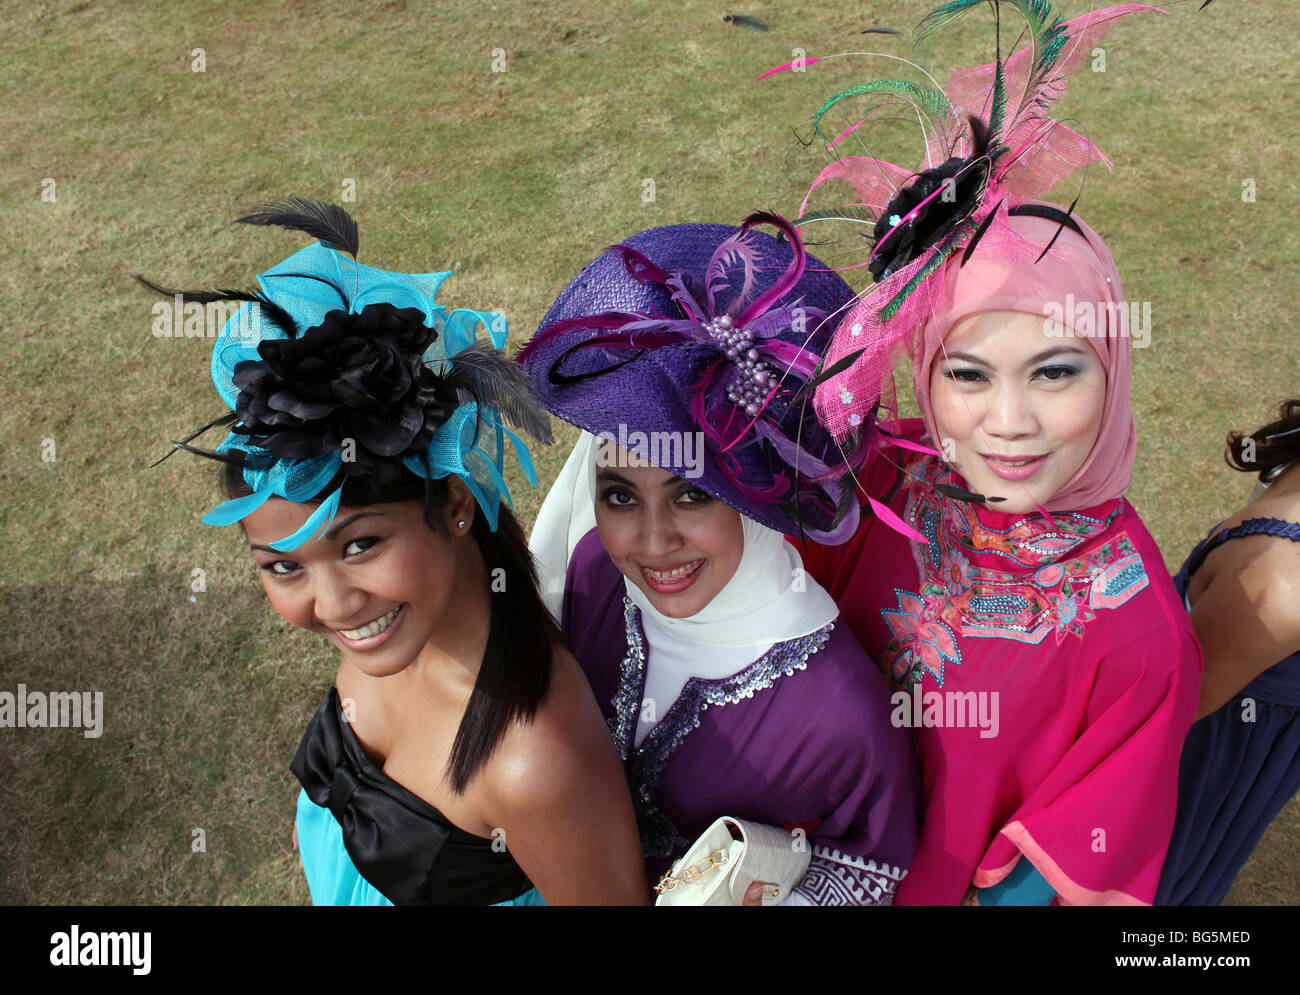 Élégamment vêtue de femmes portant chapeau durant une course de chevaux, Dubaï, Émirats Arabes Unis Banque D'Images